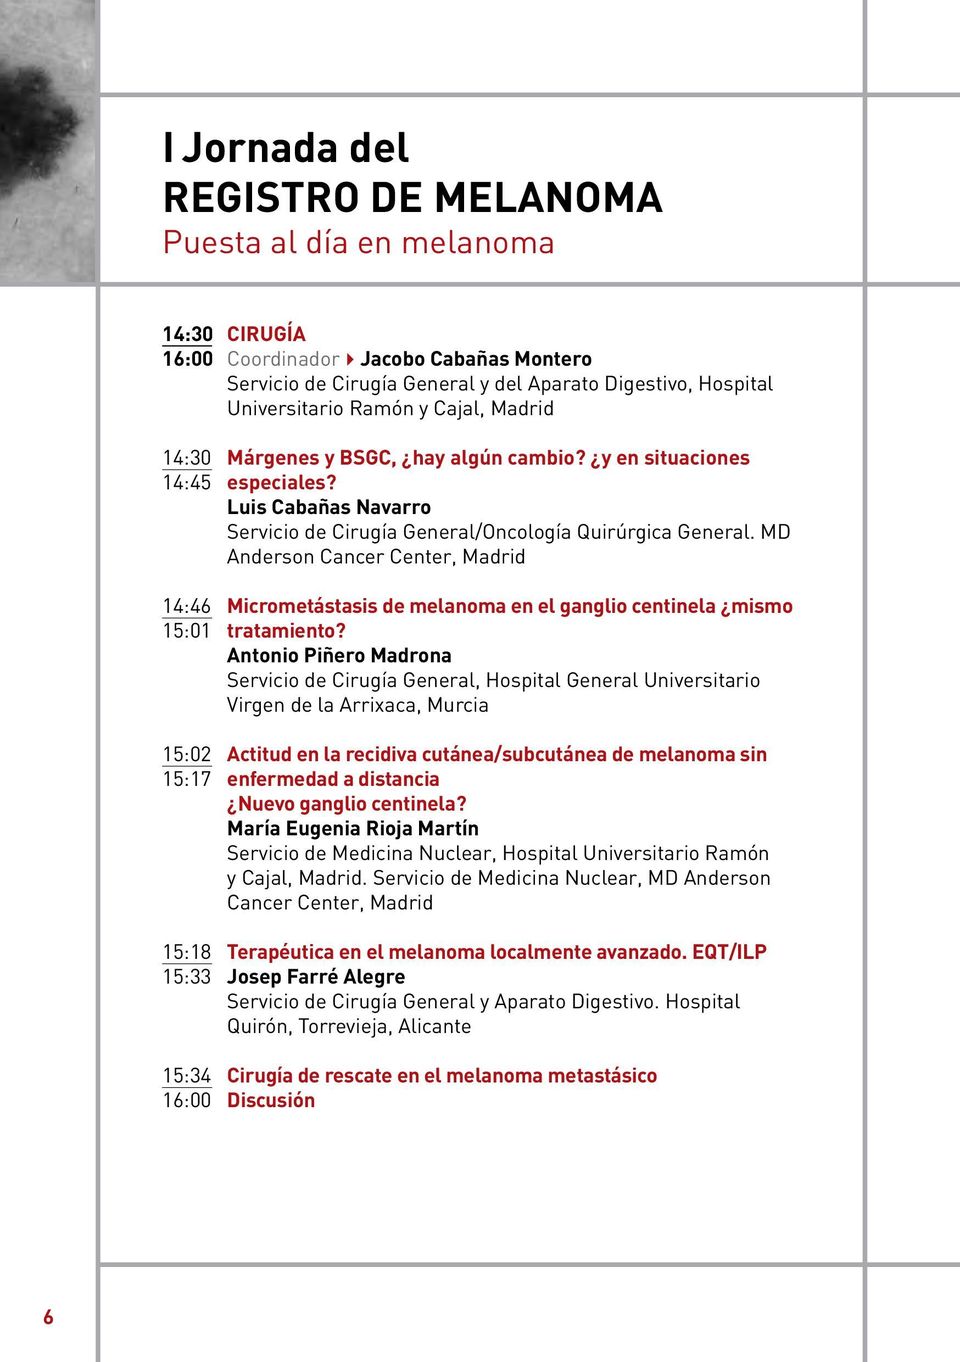 MD Anderson Cancer Center, Madrid 14:46 Micrometástasis de melanoma en el ganglio centinela mismo 15:01 tratamiento?